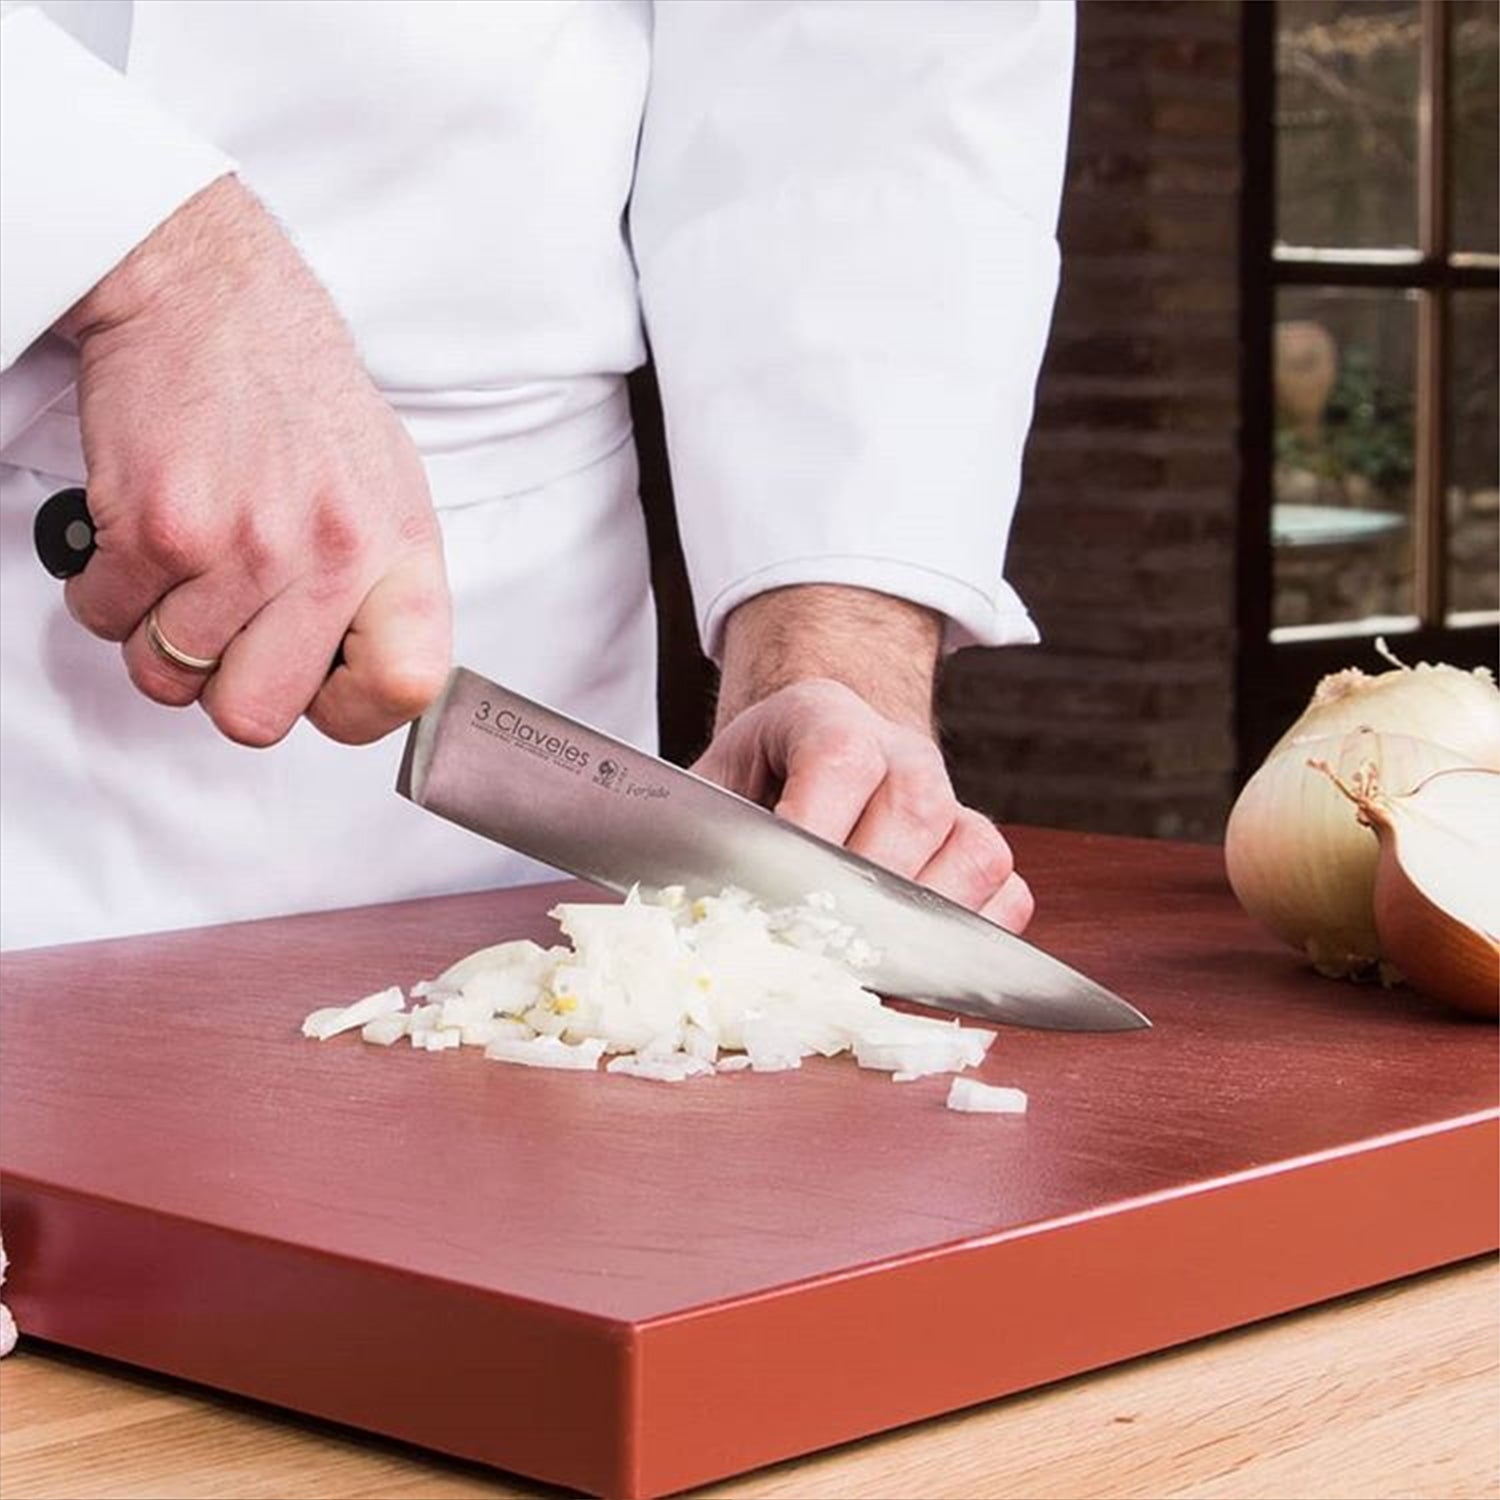  3 Claveles Cuchillo de cocina profesional Kimura